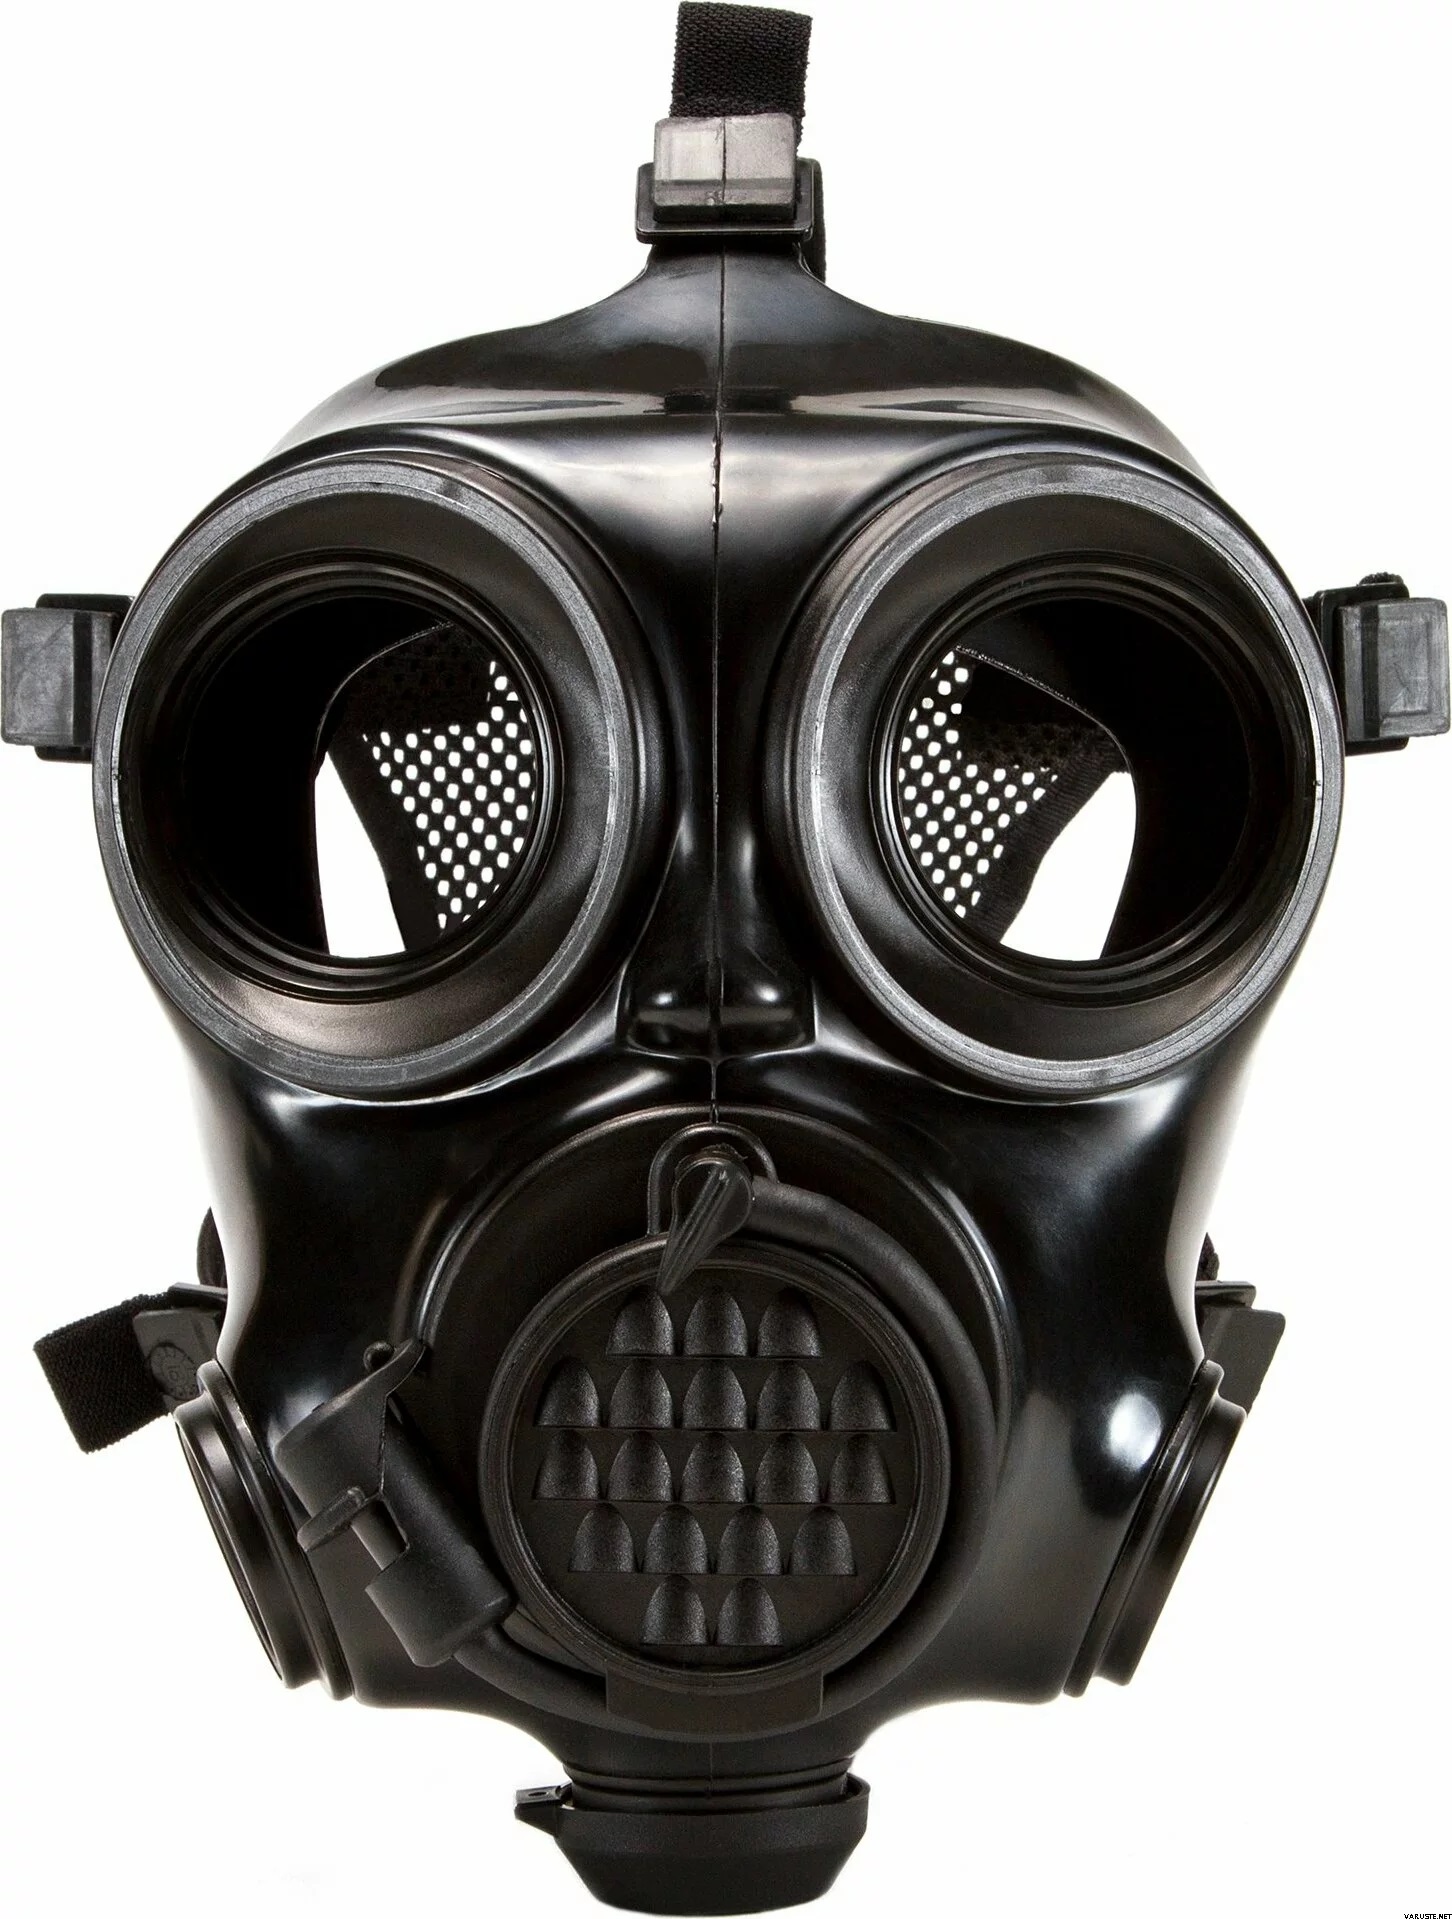 Masque à gaz complet, masques à gaz Survie nucléaire et chimique av